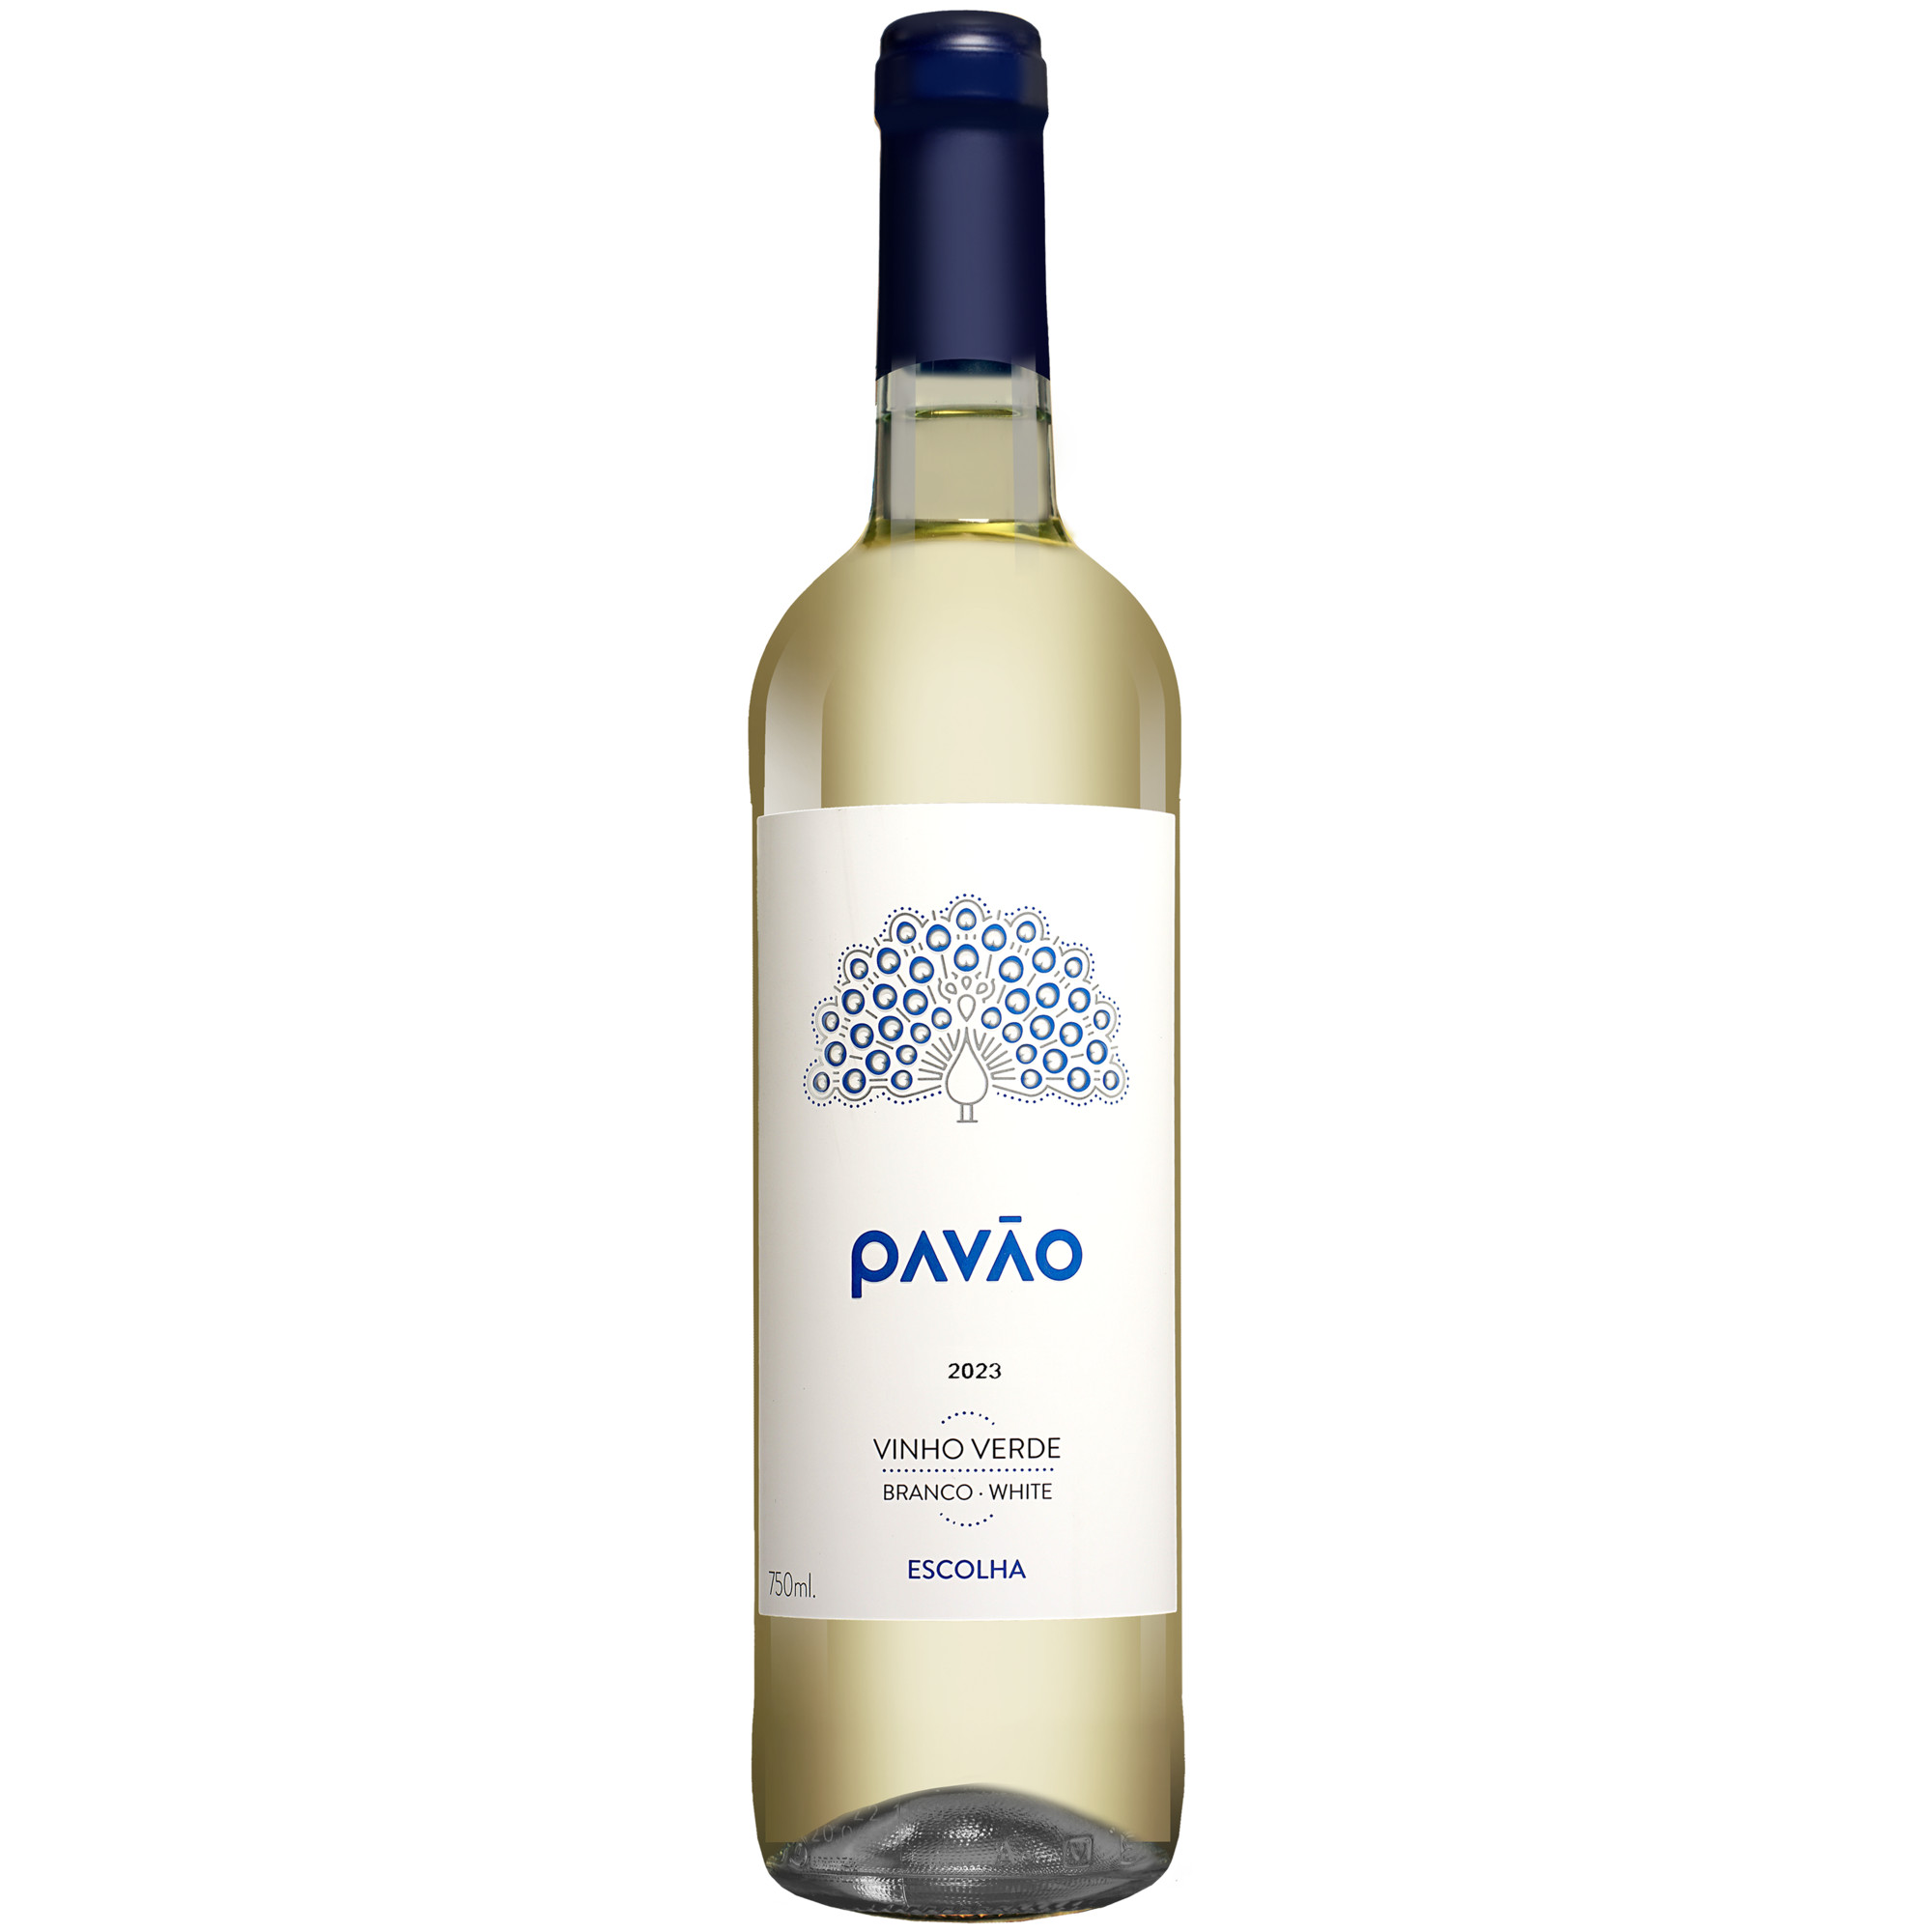 Pavão Escolha Vinho Verde Branco 2023  011% Vol. Weißwein Halbtrocken aus Portugal